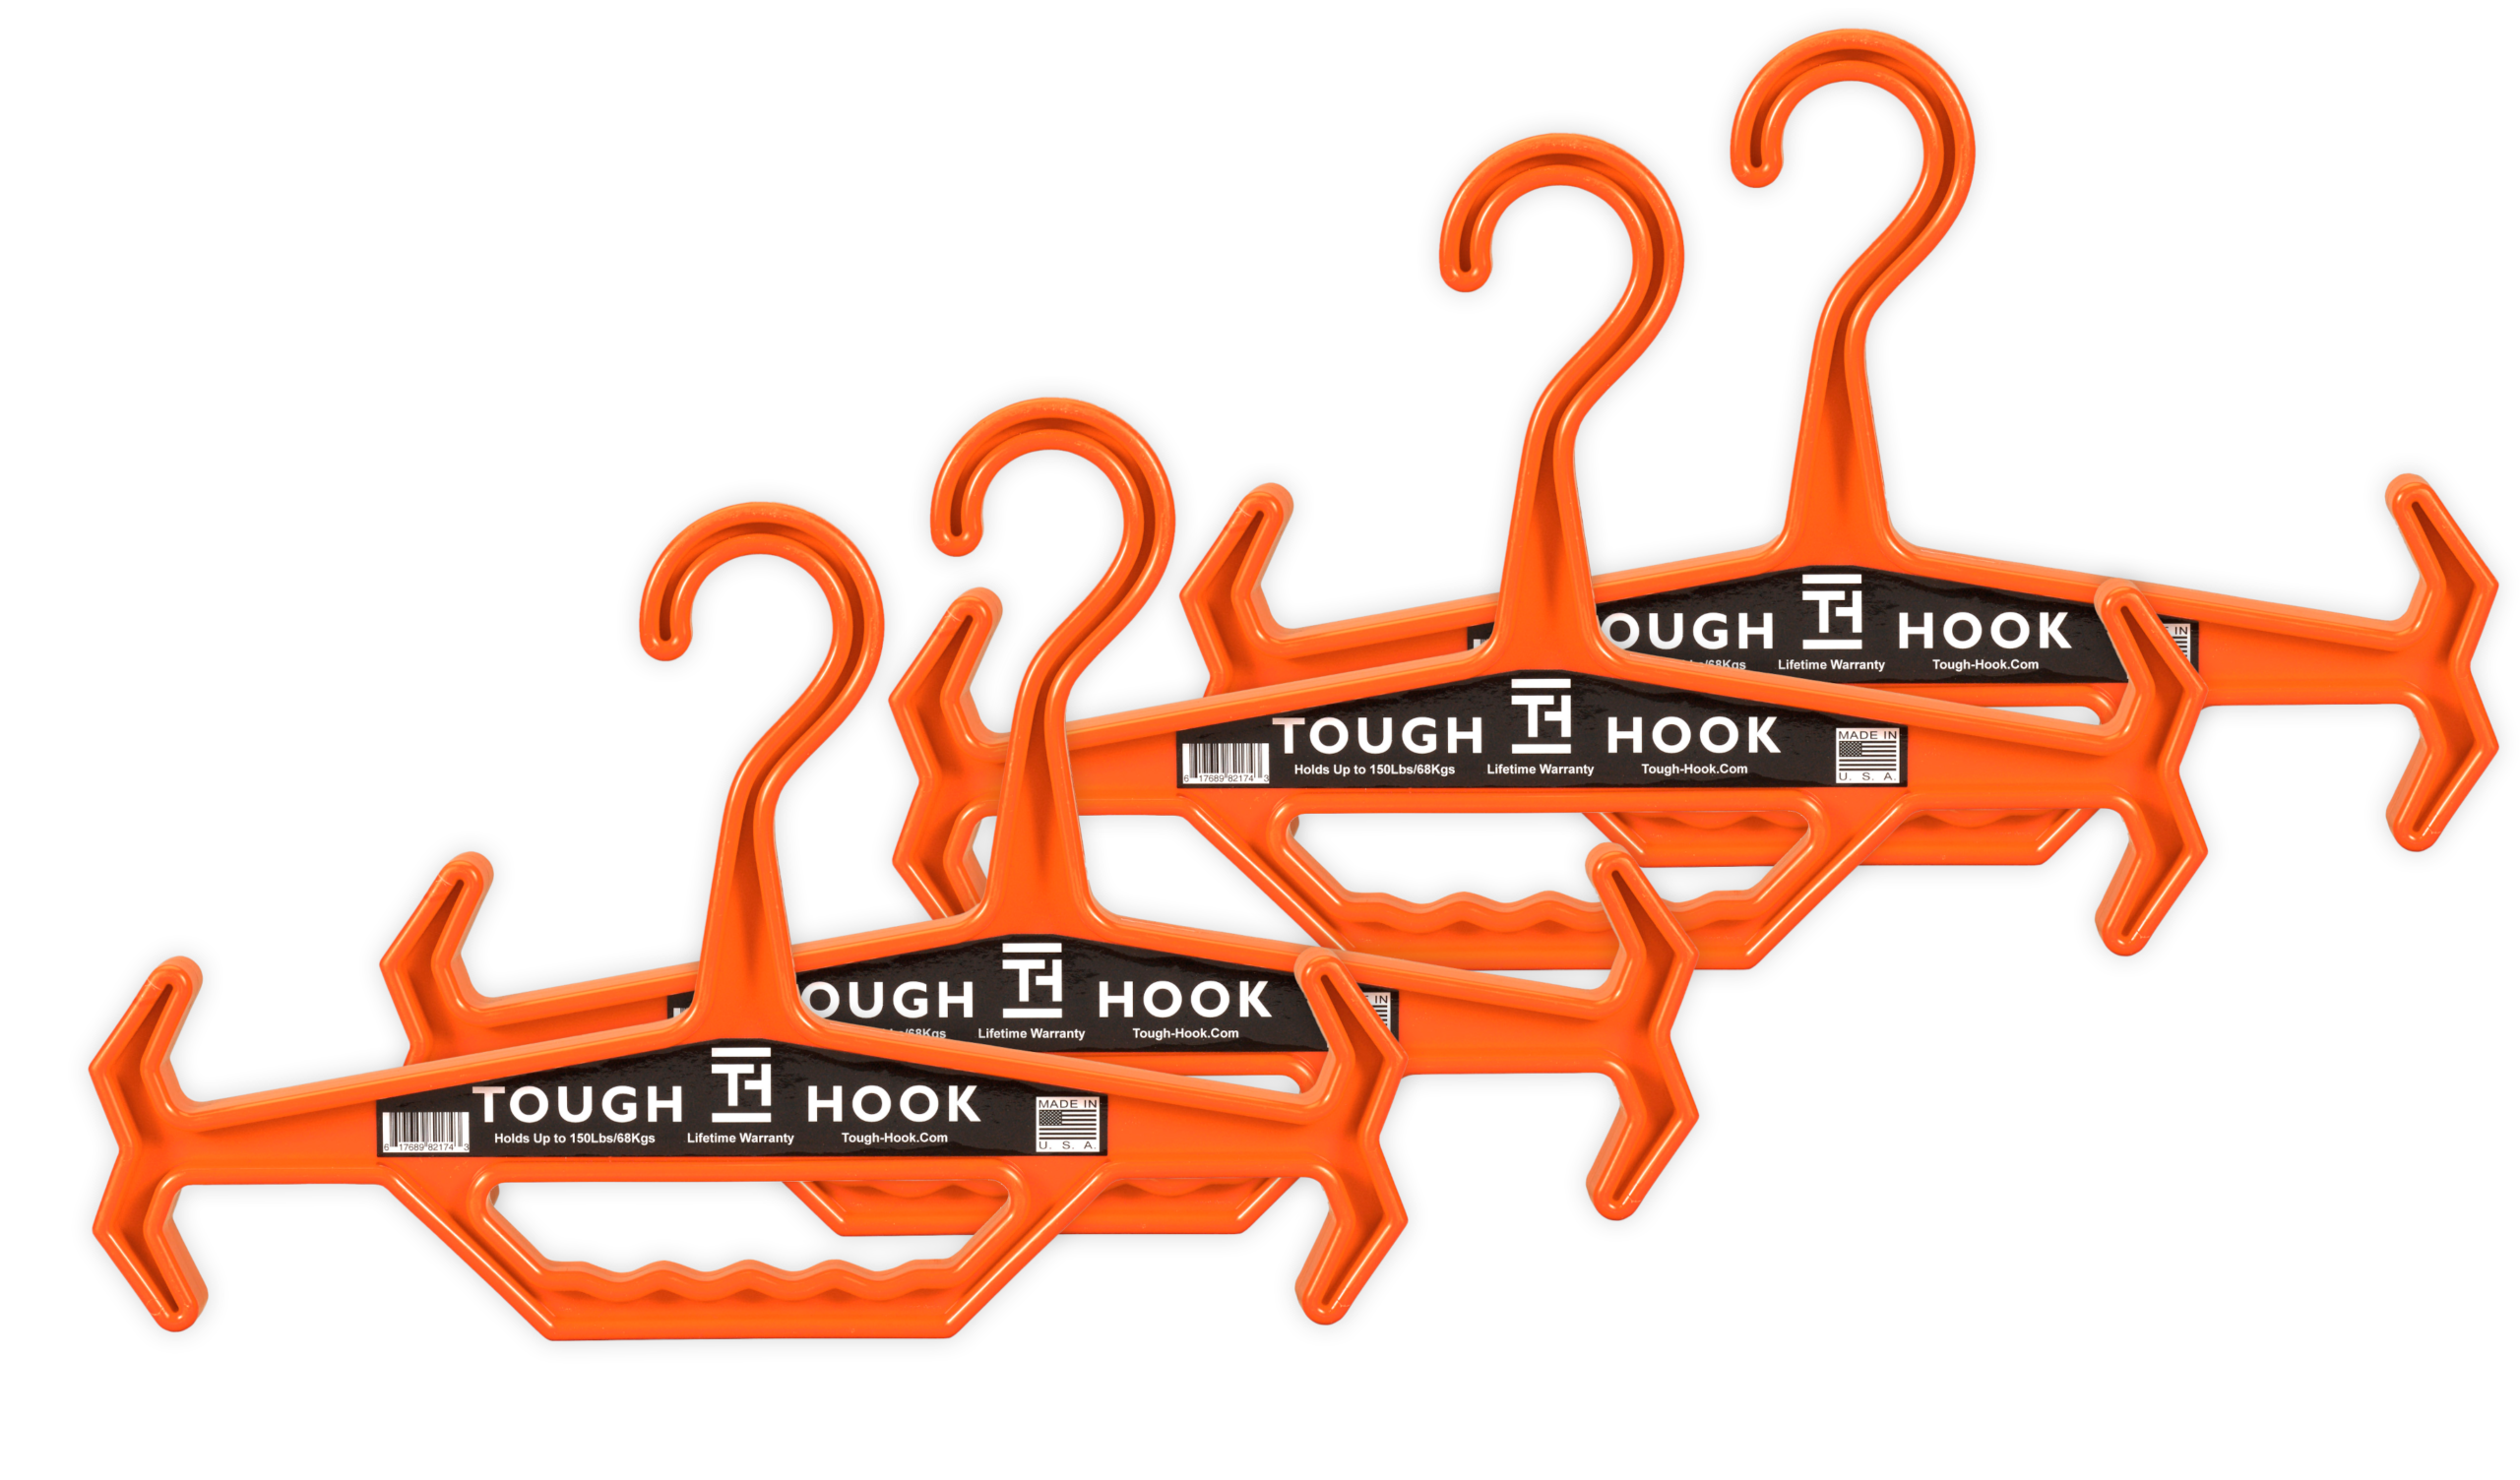 Tough Hook Hanger - Novritsch